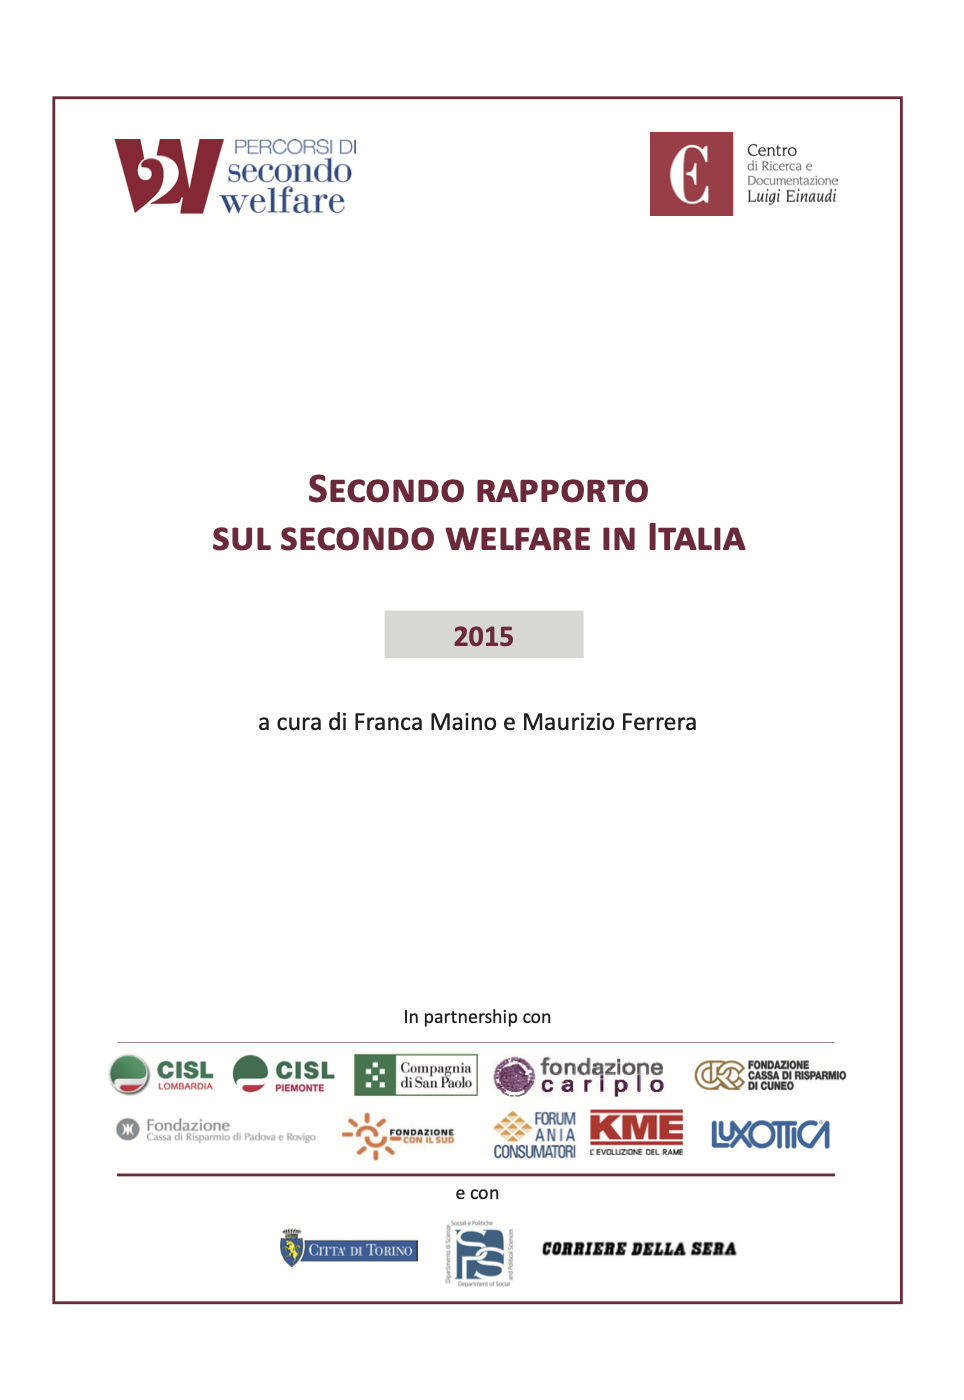 Secondo Rapporto sul secondo welfare in Italia 2015